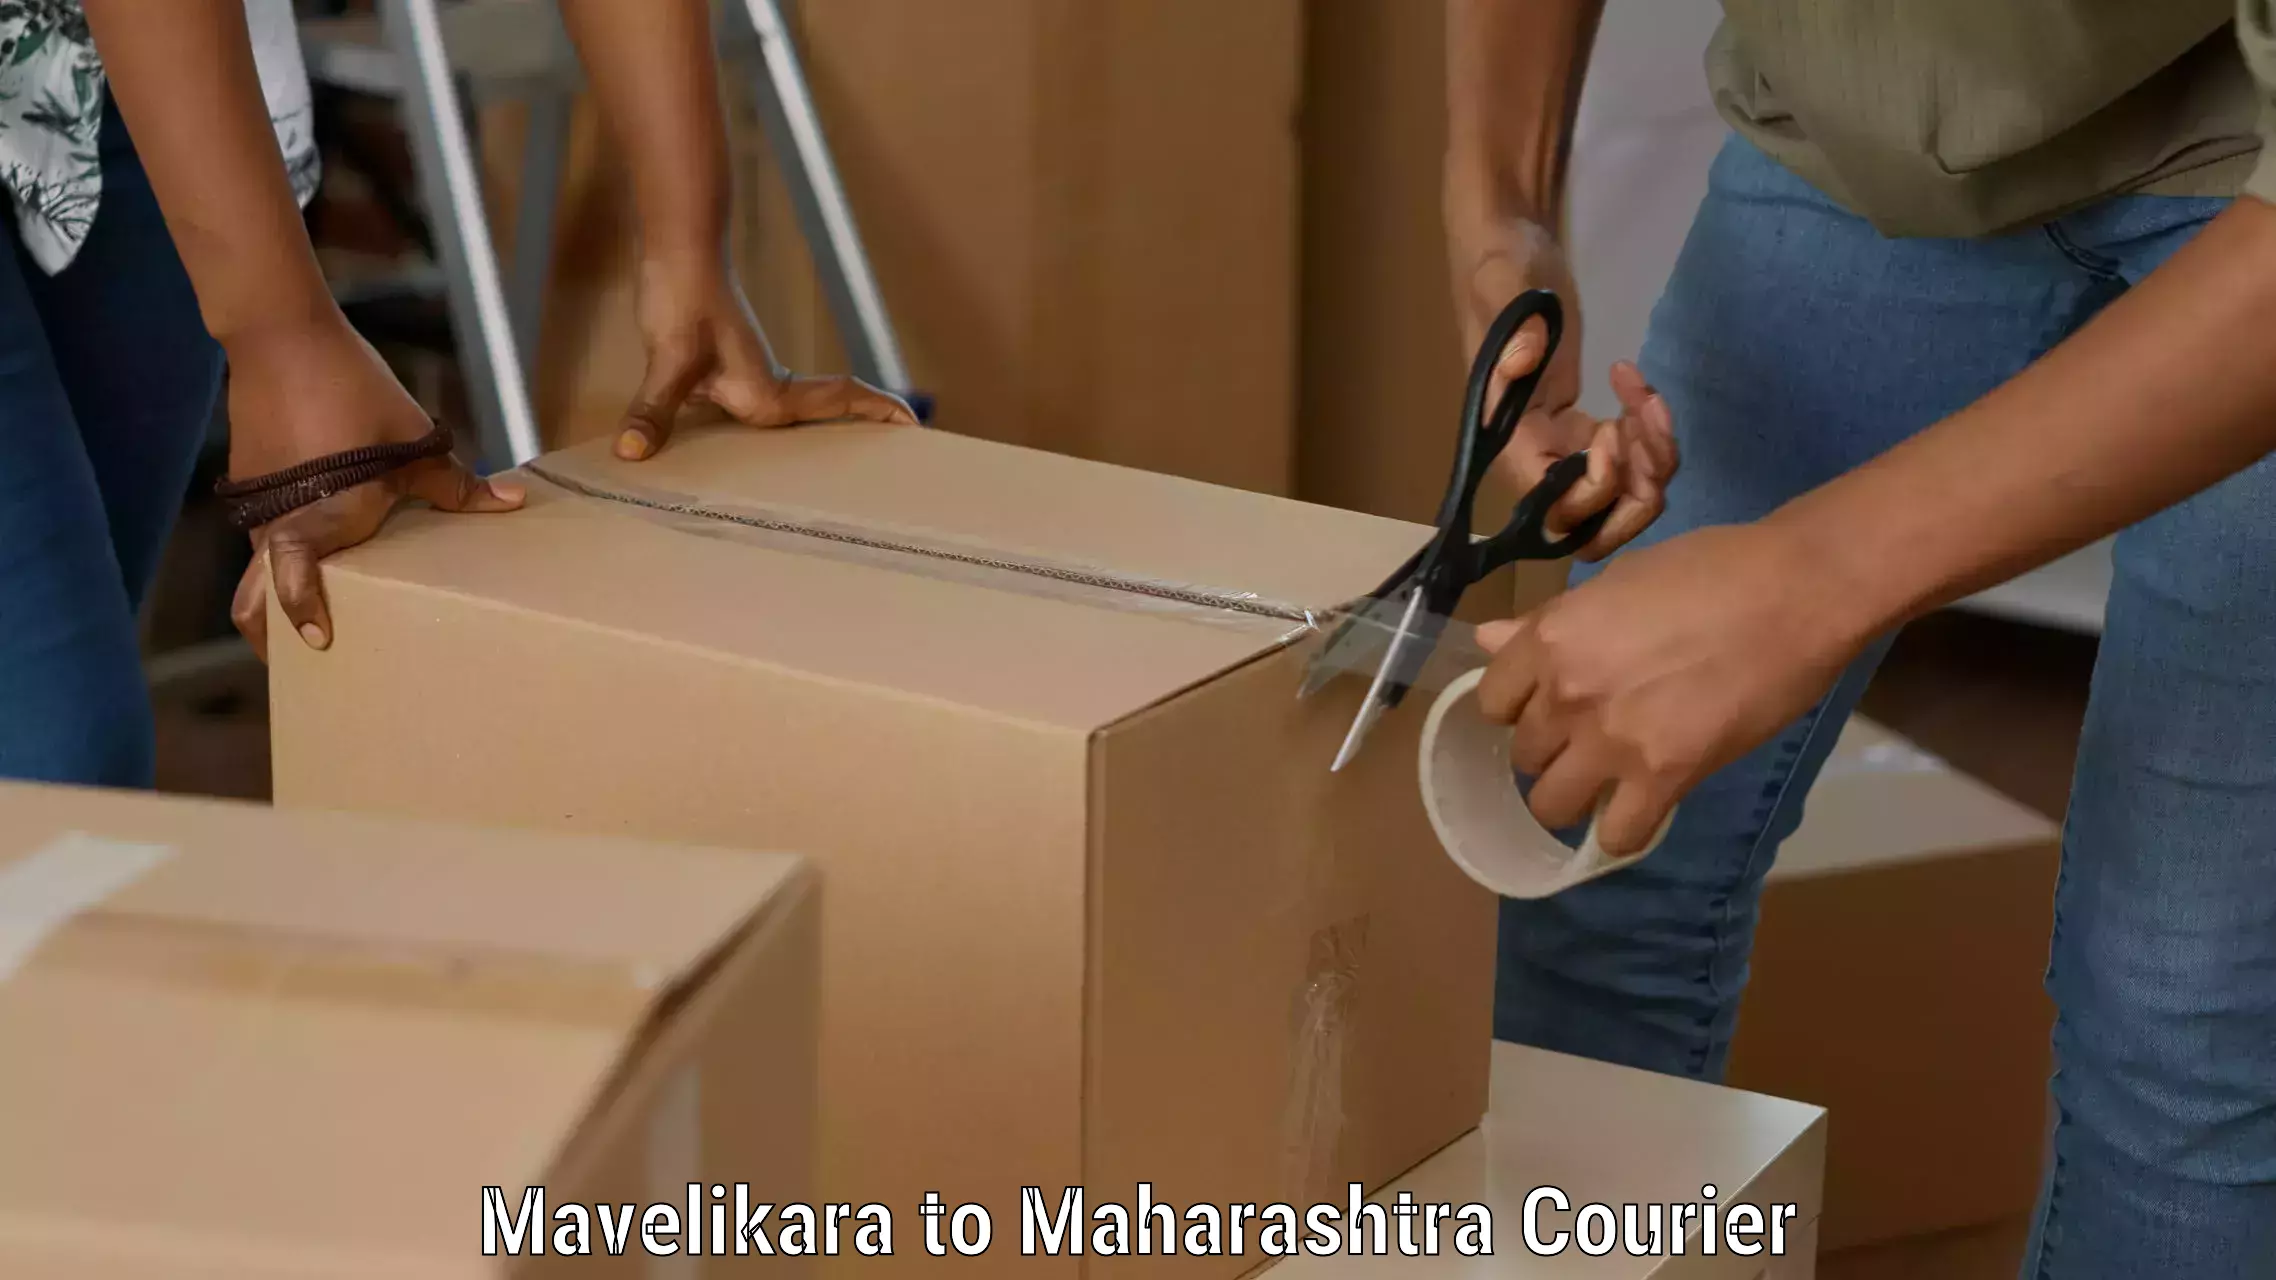 Custom courier strategies Mavelikara to Maharashtra